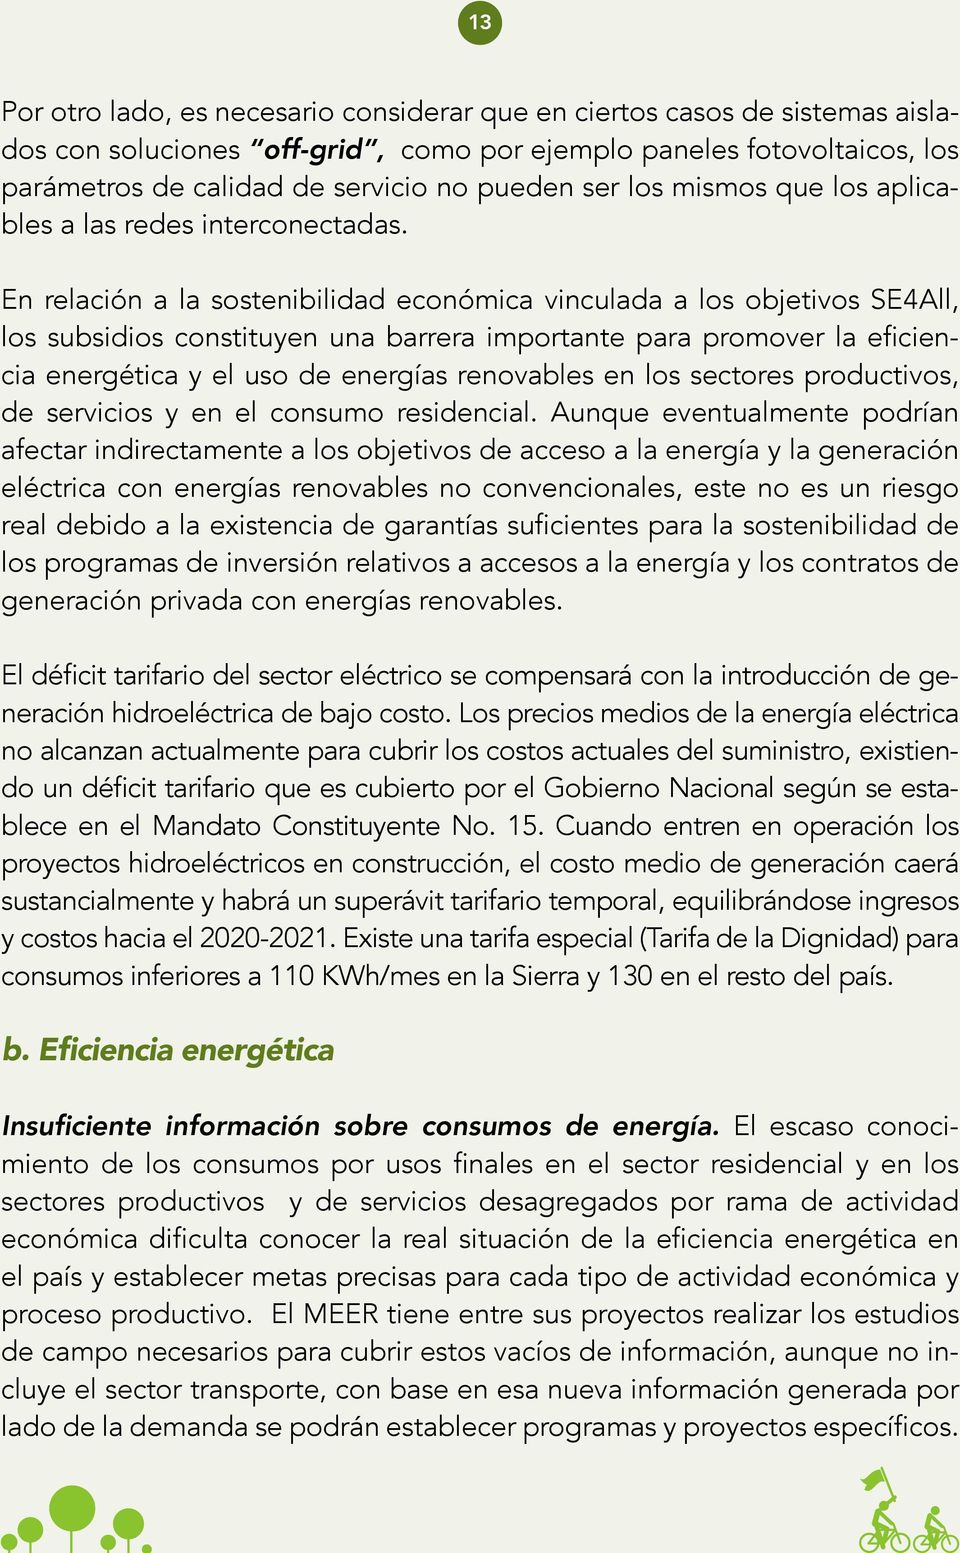 En relación a la sostenibilidad económica vinculada a los objetivos SE4All, los subsidios constituyen una barrera importante para promover la eficiencia energética y el uso de energías renovables en